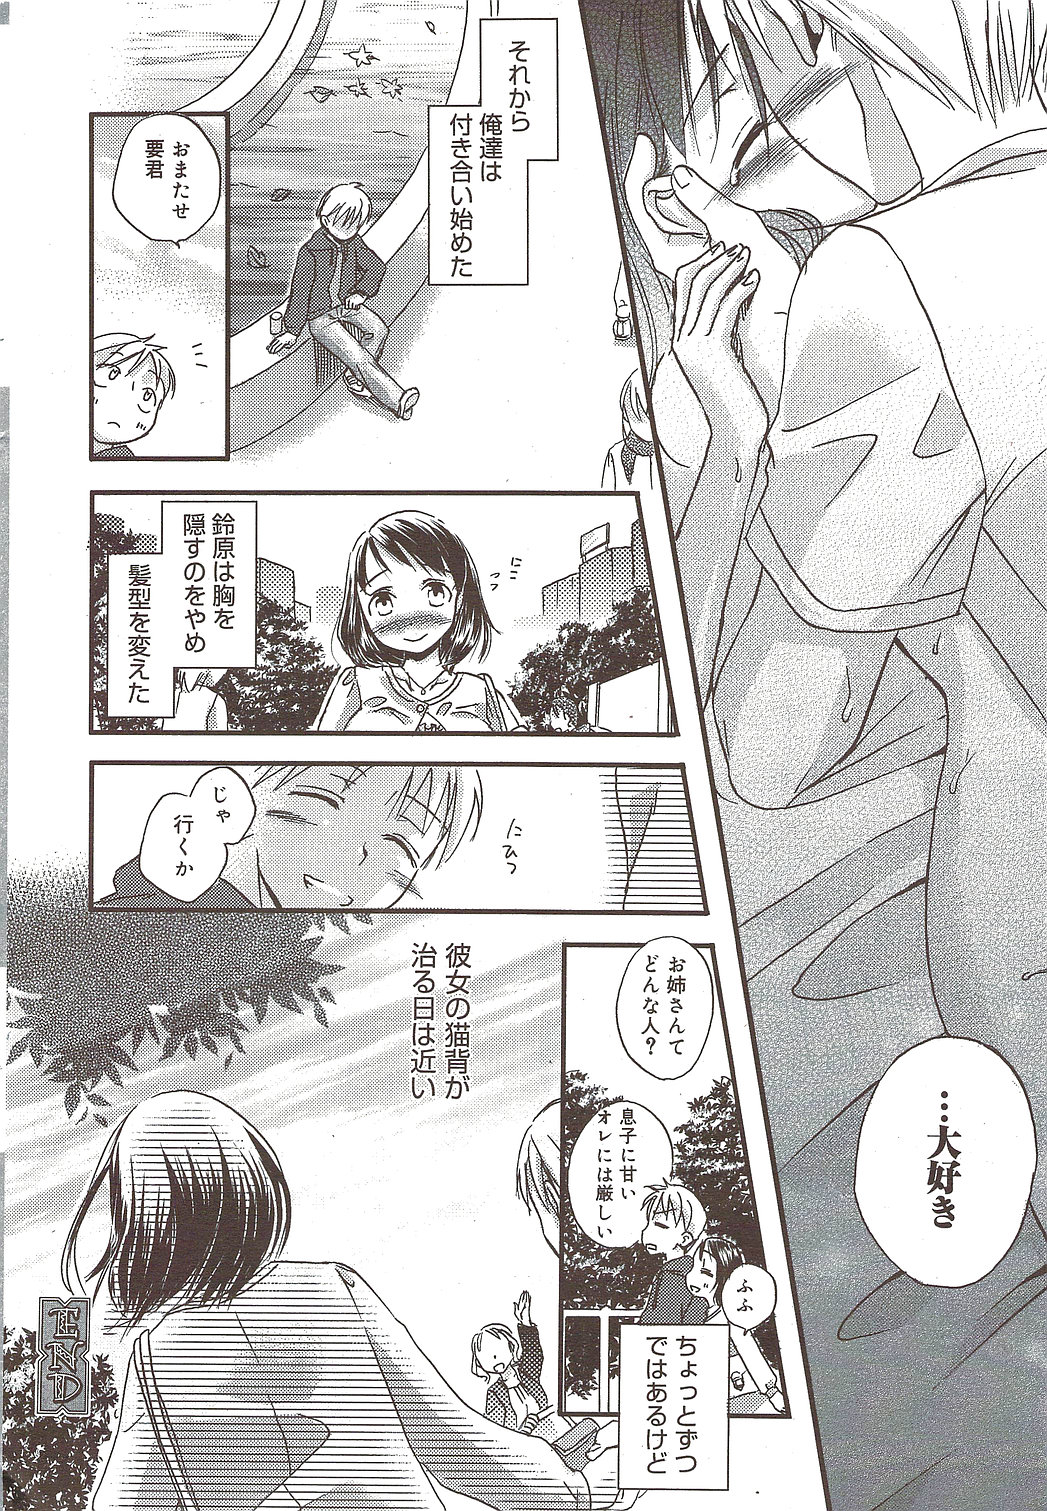 Manga Bangaichi 2009-12 page 22 full